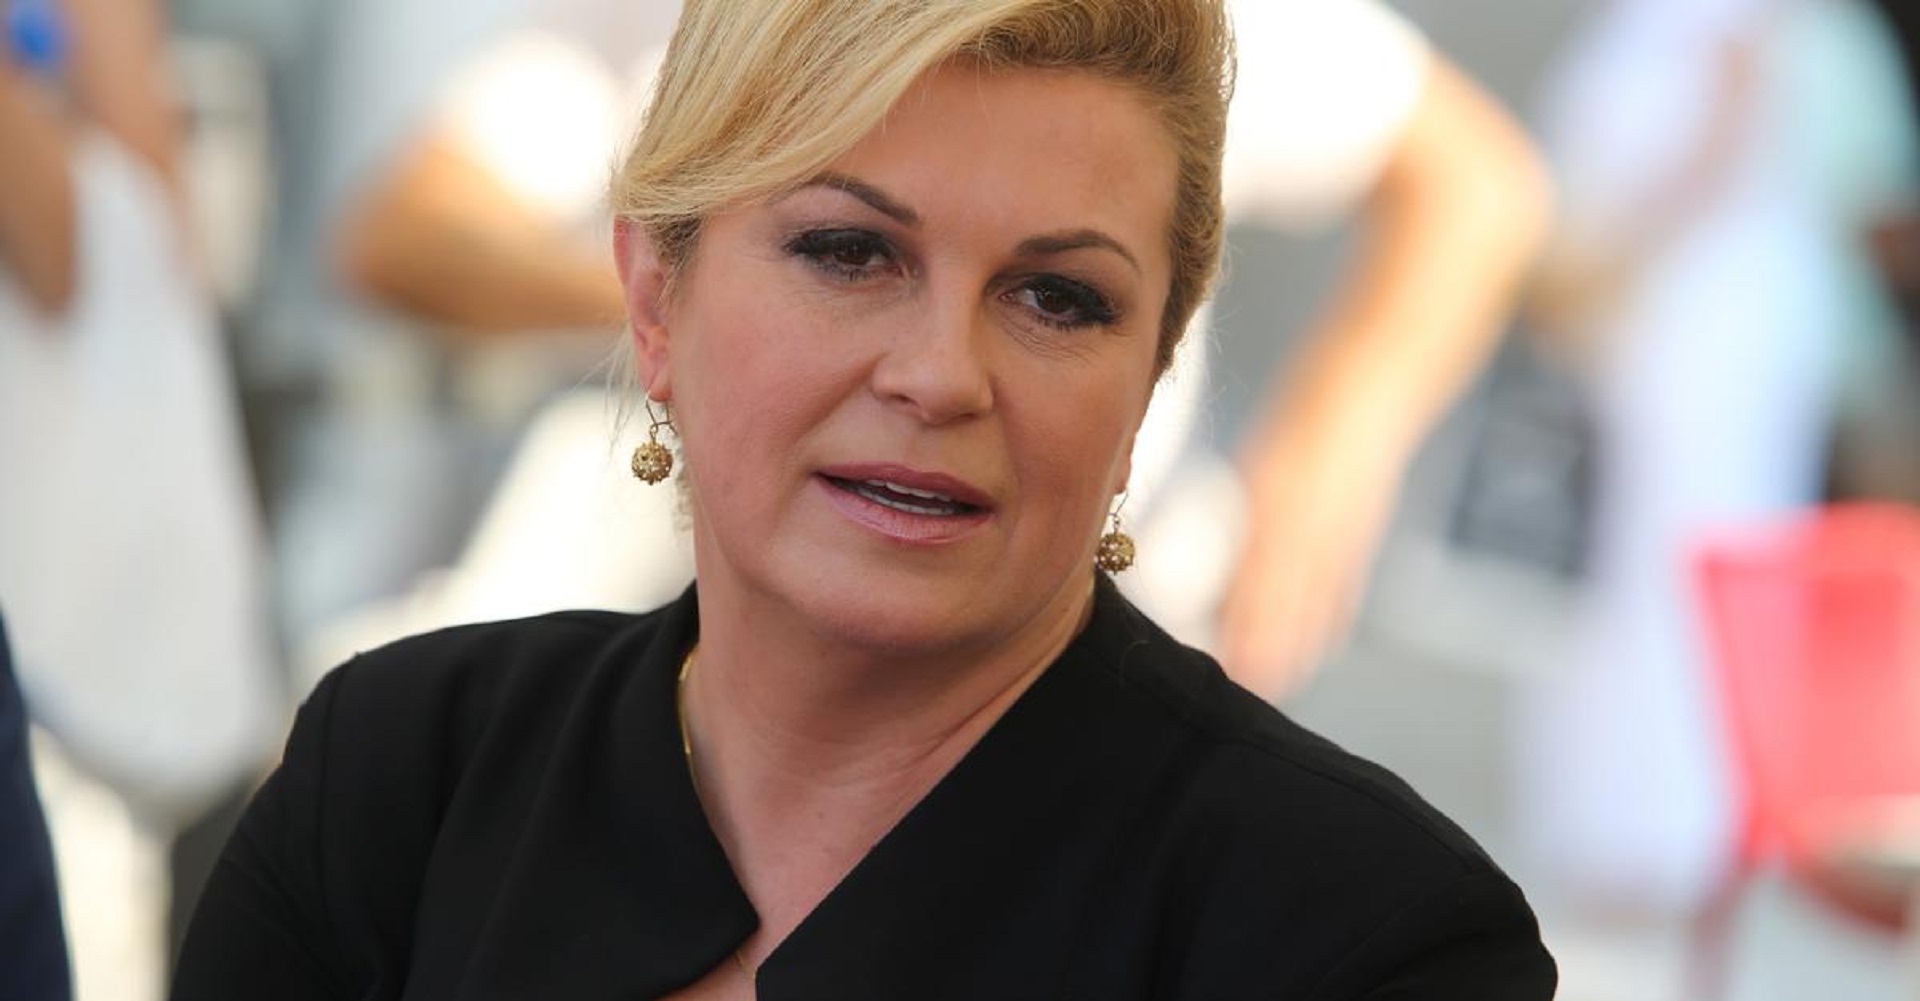 Президент хорватии фото грабар китарович колинда грабар